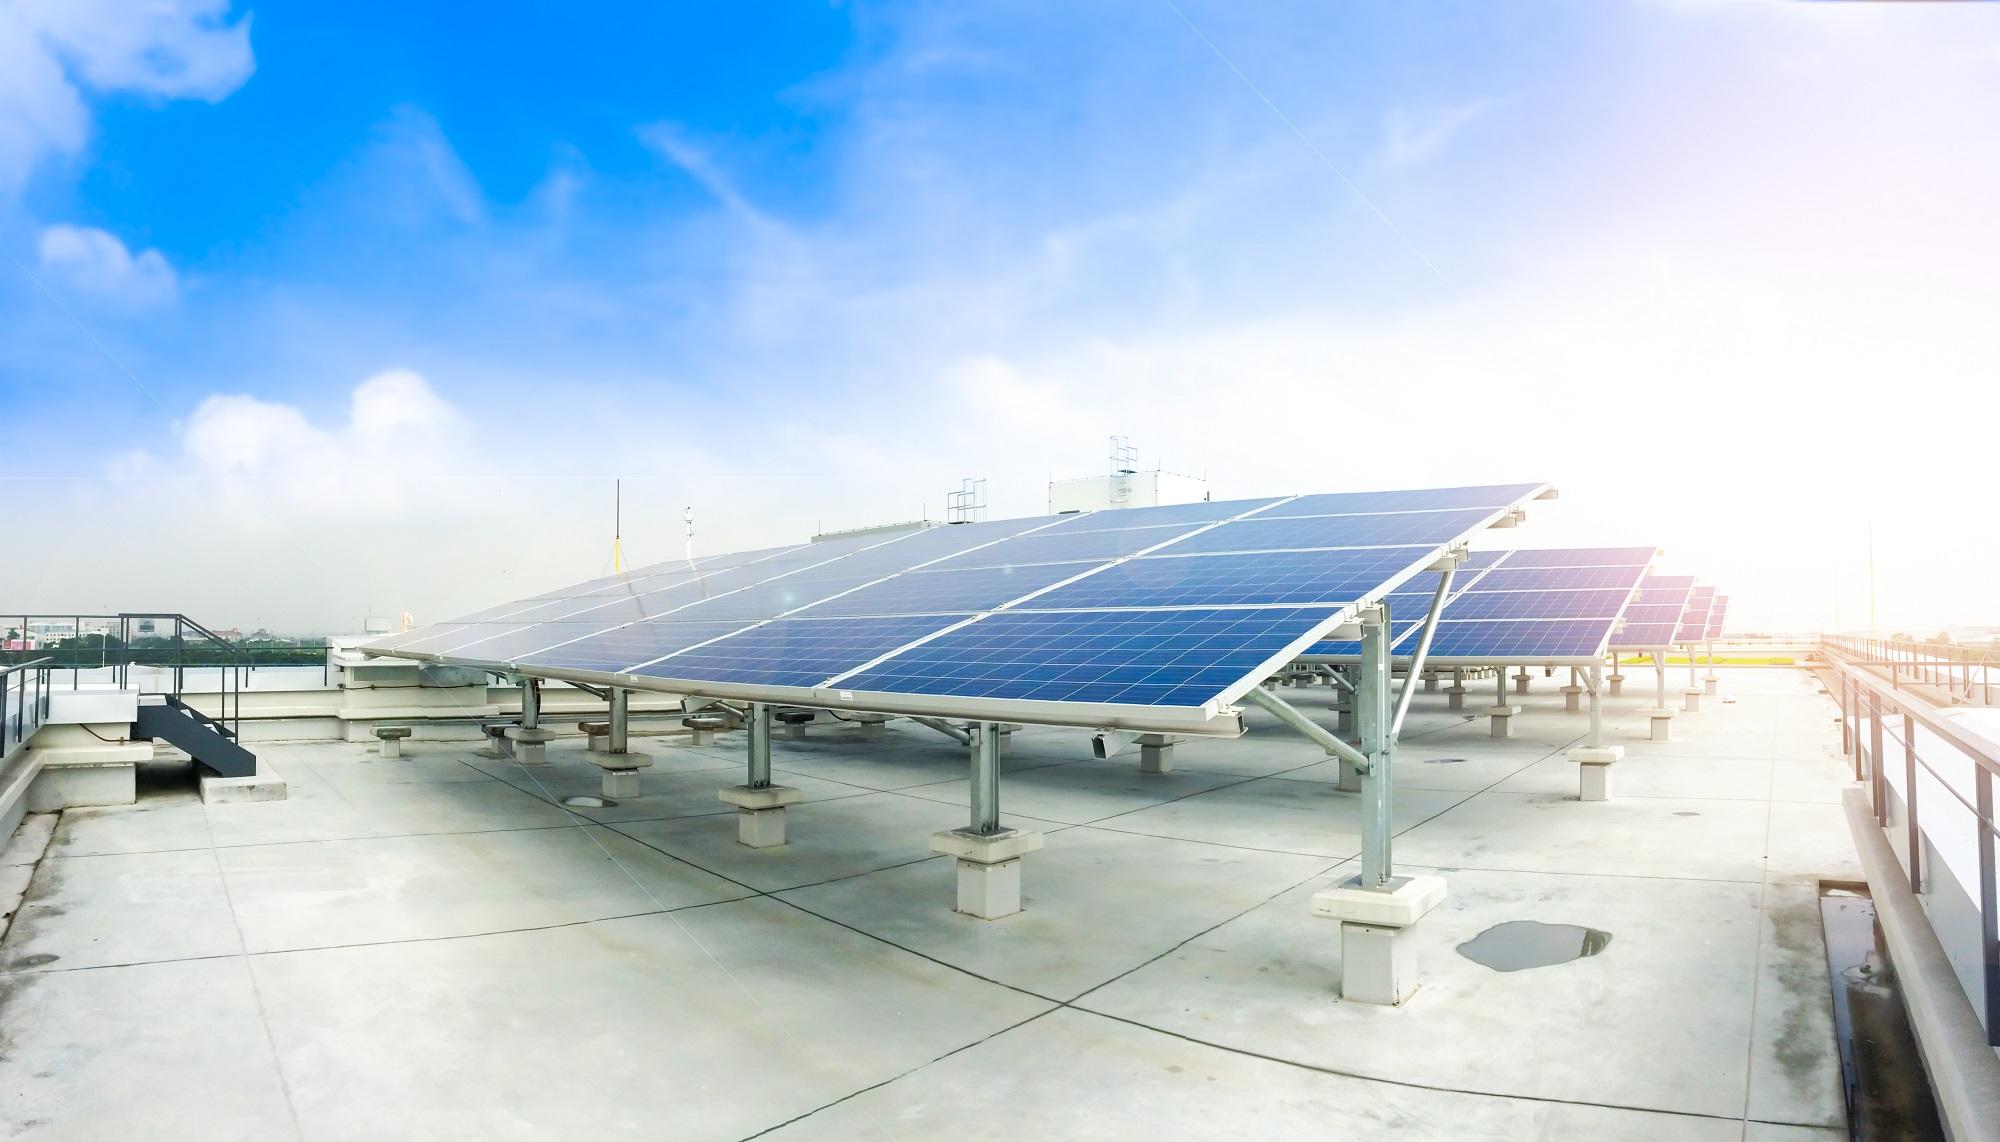 أنظمة خلايا شمسية فوق مبنى. (Shutterstock)